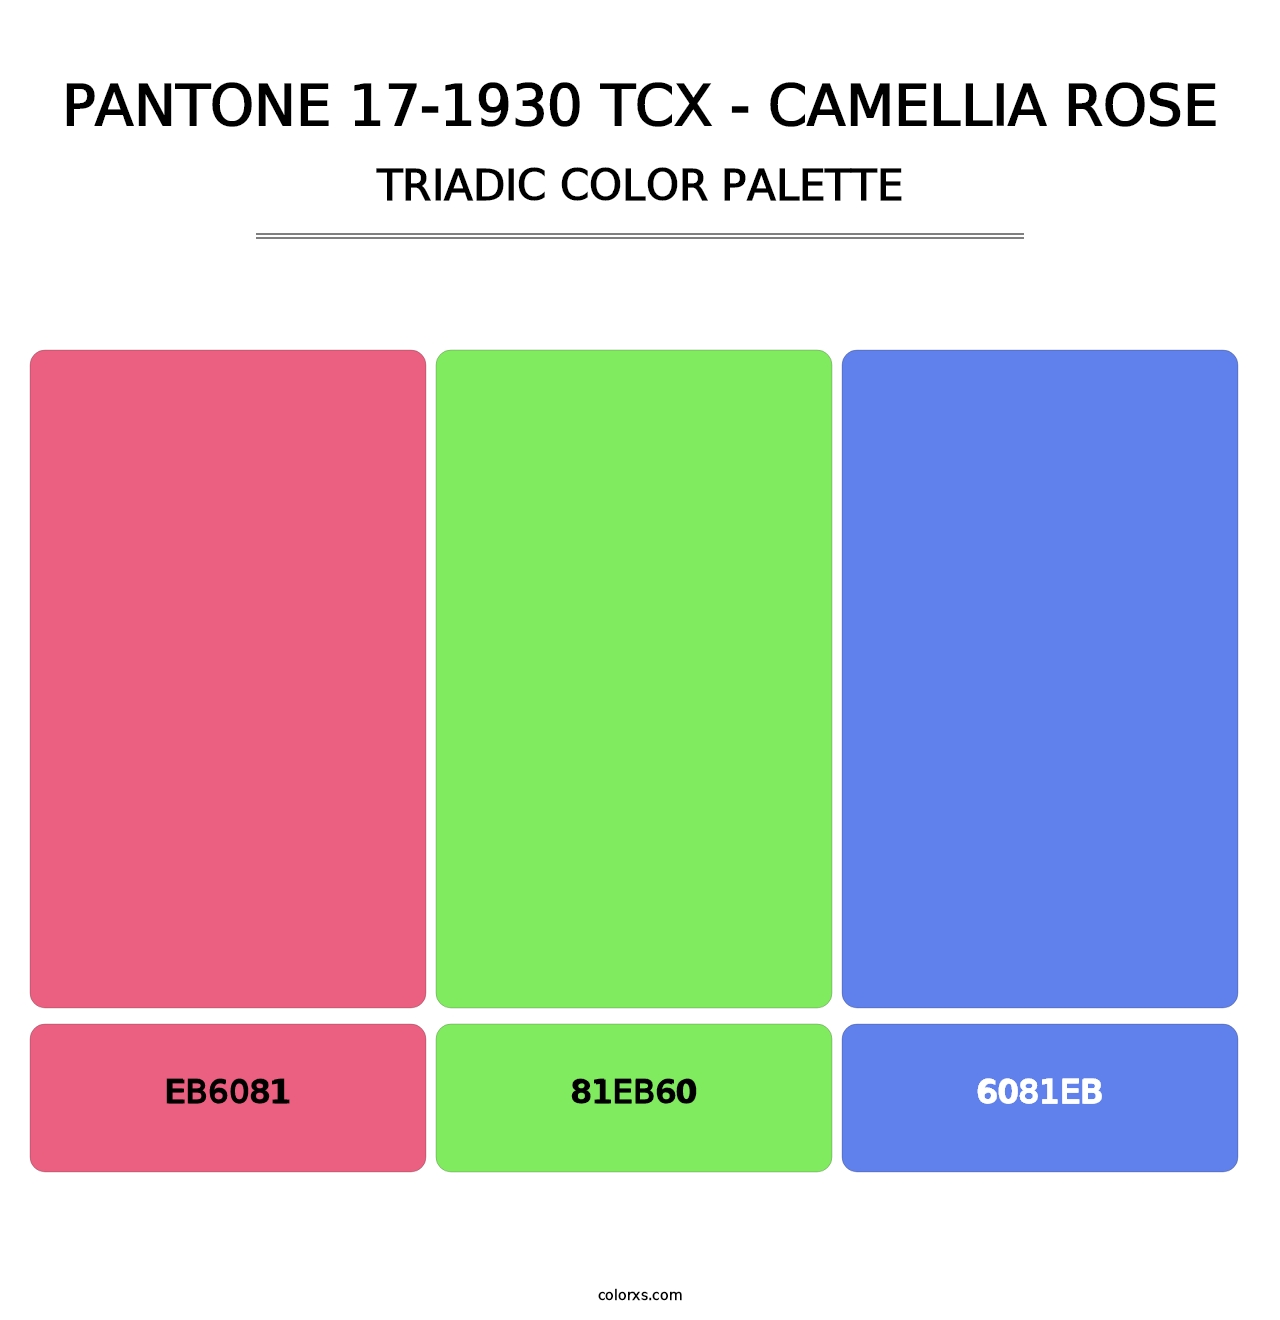 PANTONE 17-1930 TCX - Camellia Rose - Triadic Color Palette